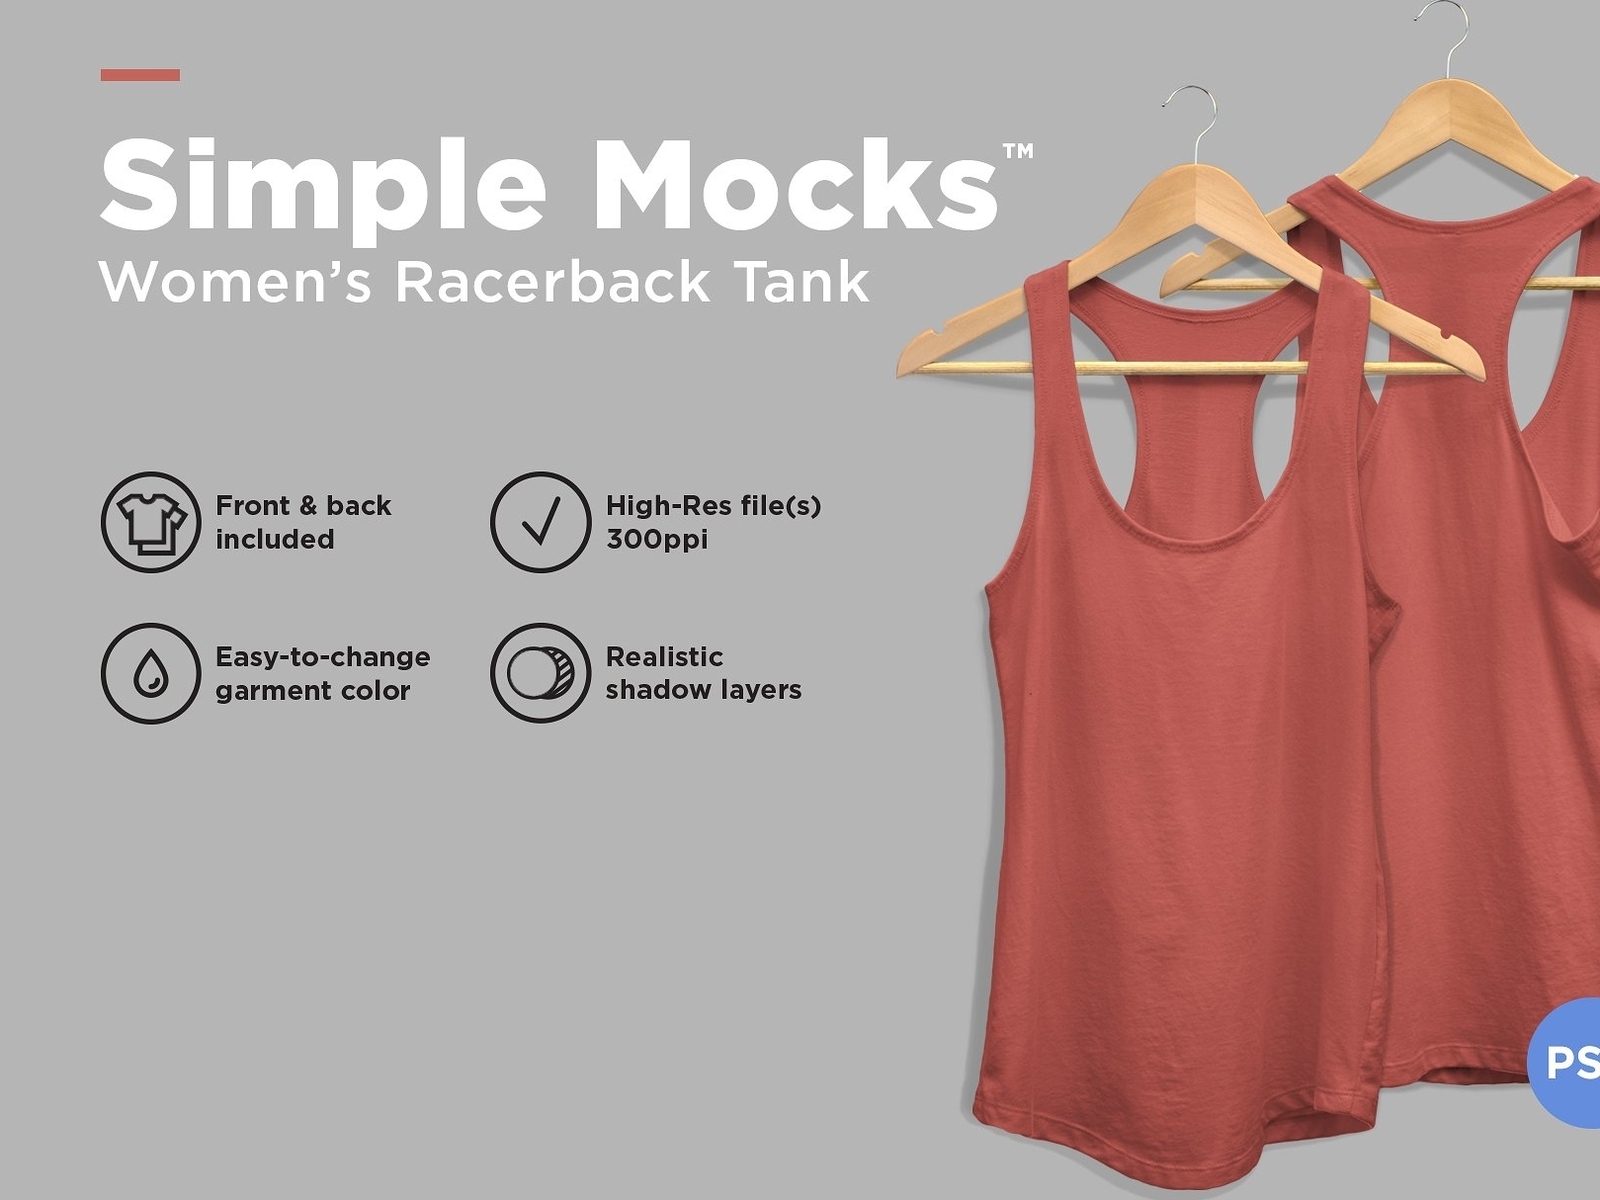 Women's Racerback Tank Mockup by Michael Hoss on Dribbble